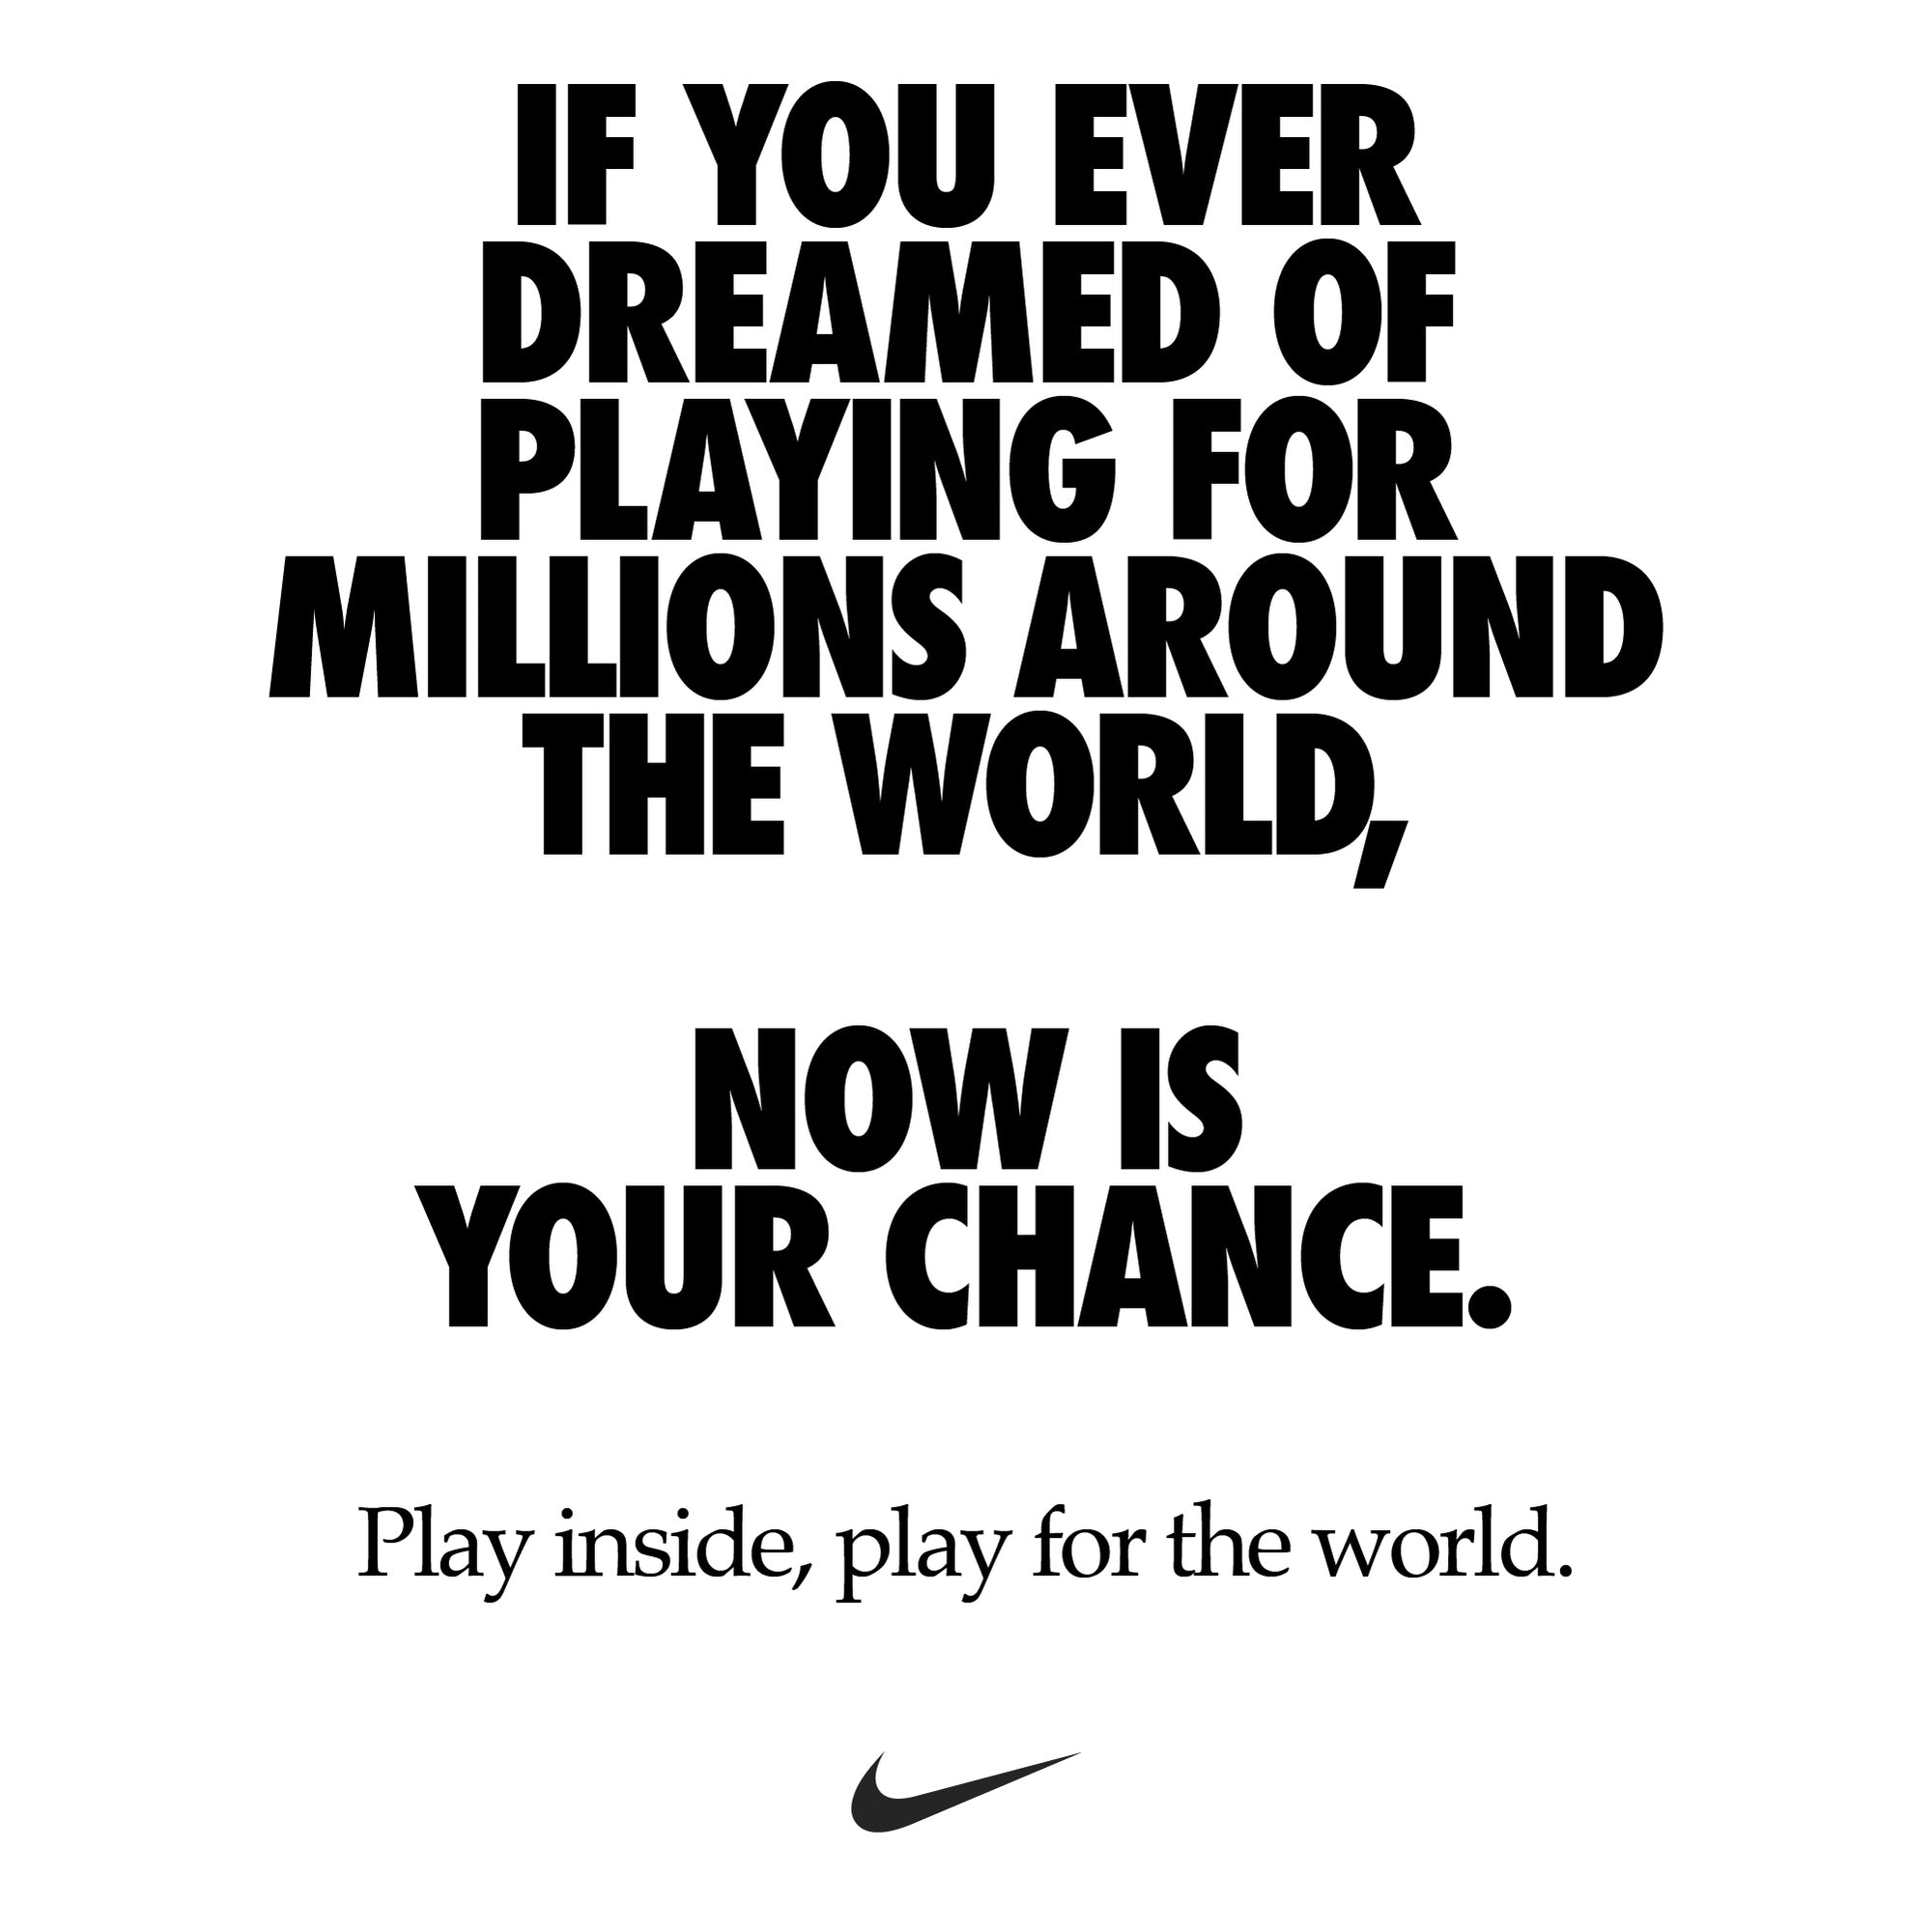 Nike Rallying Cry - #playinside #playfortheworld